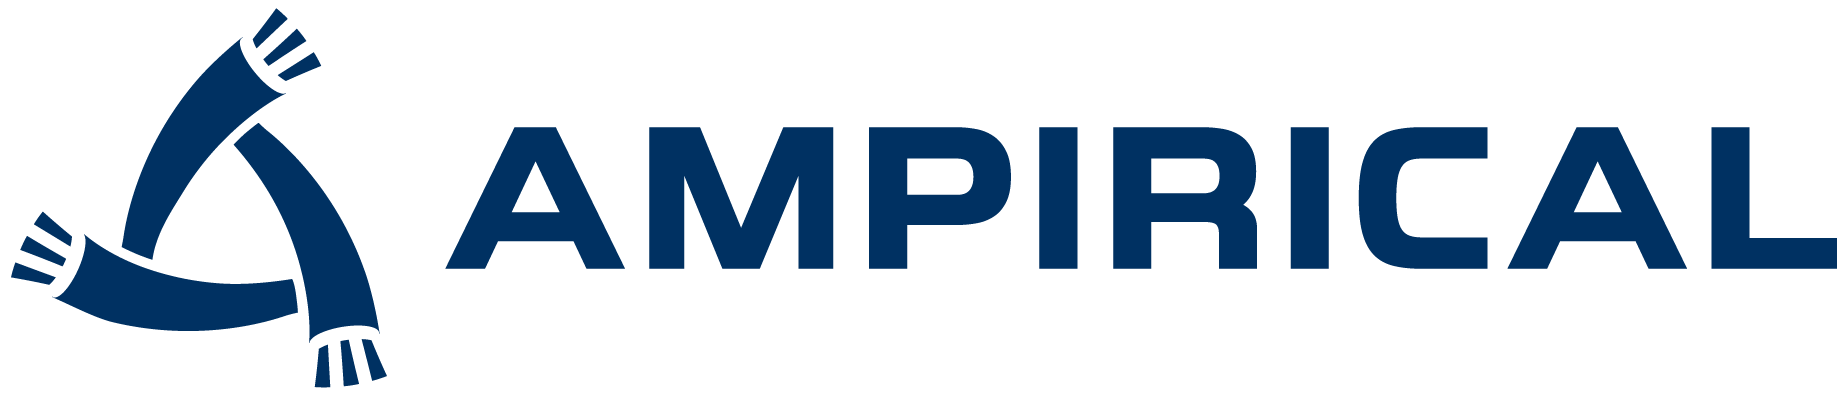 Ampirical logo